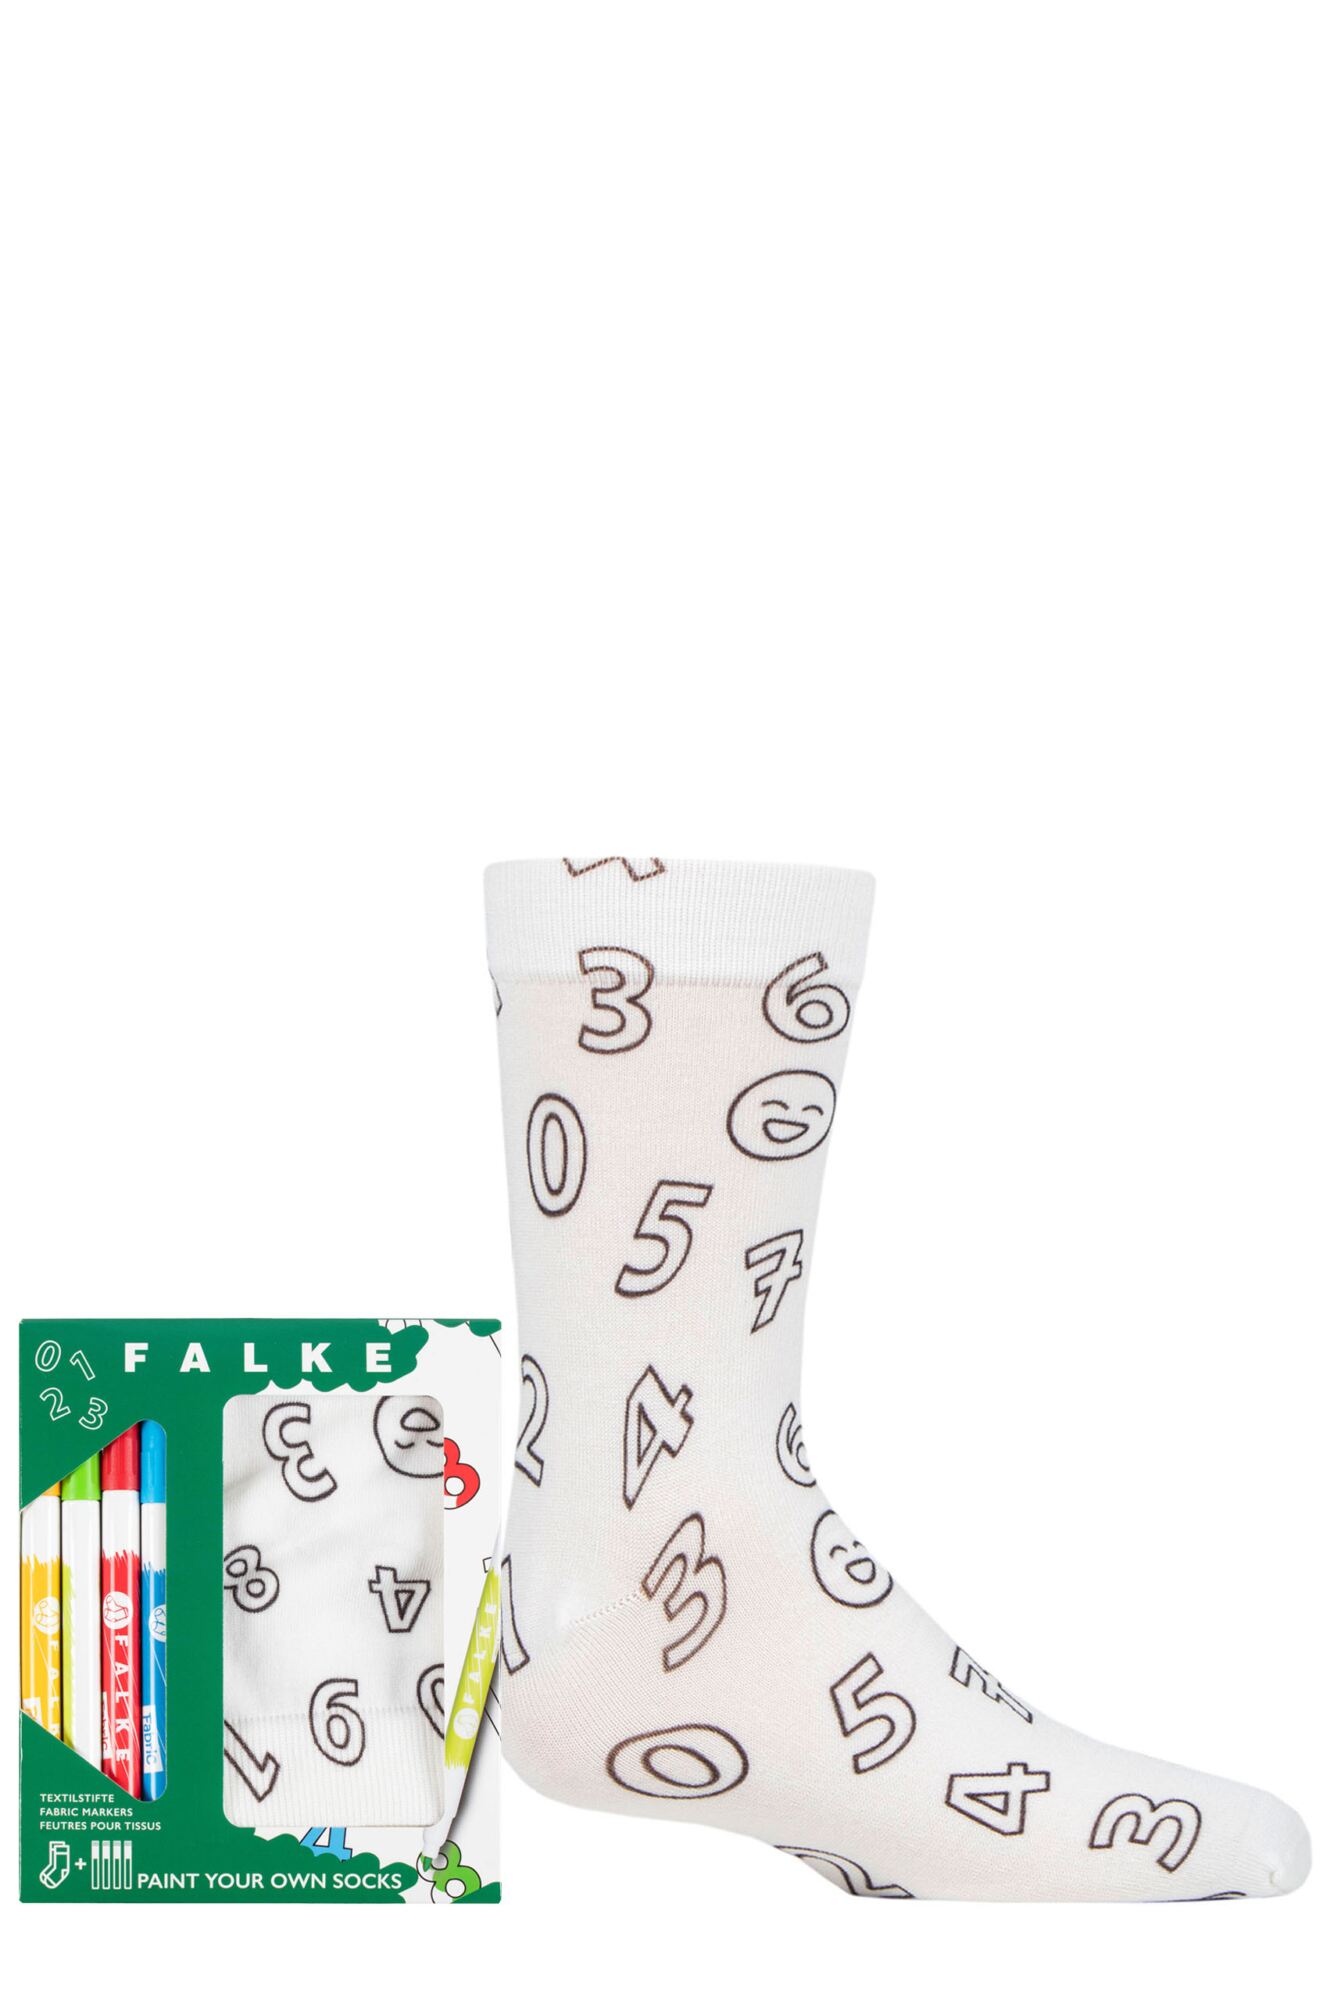 Boys and Girls 1 Pair Falke Colour your own Socks Gift set